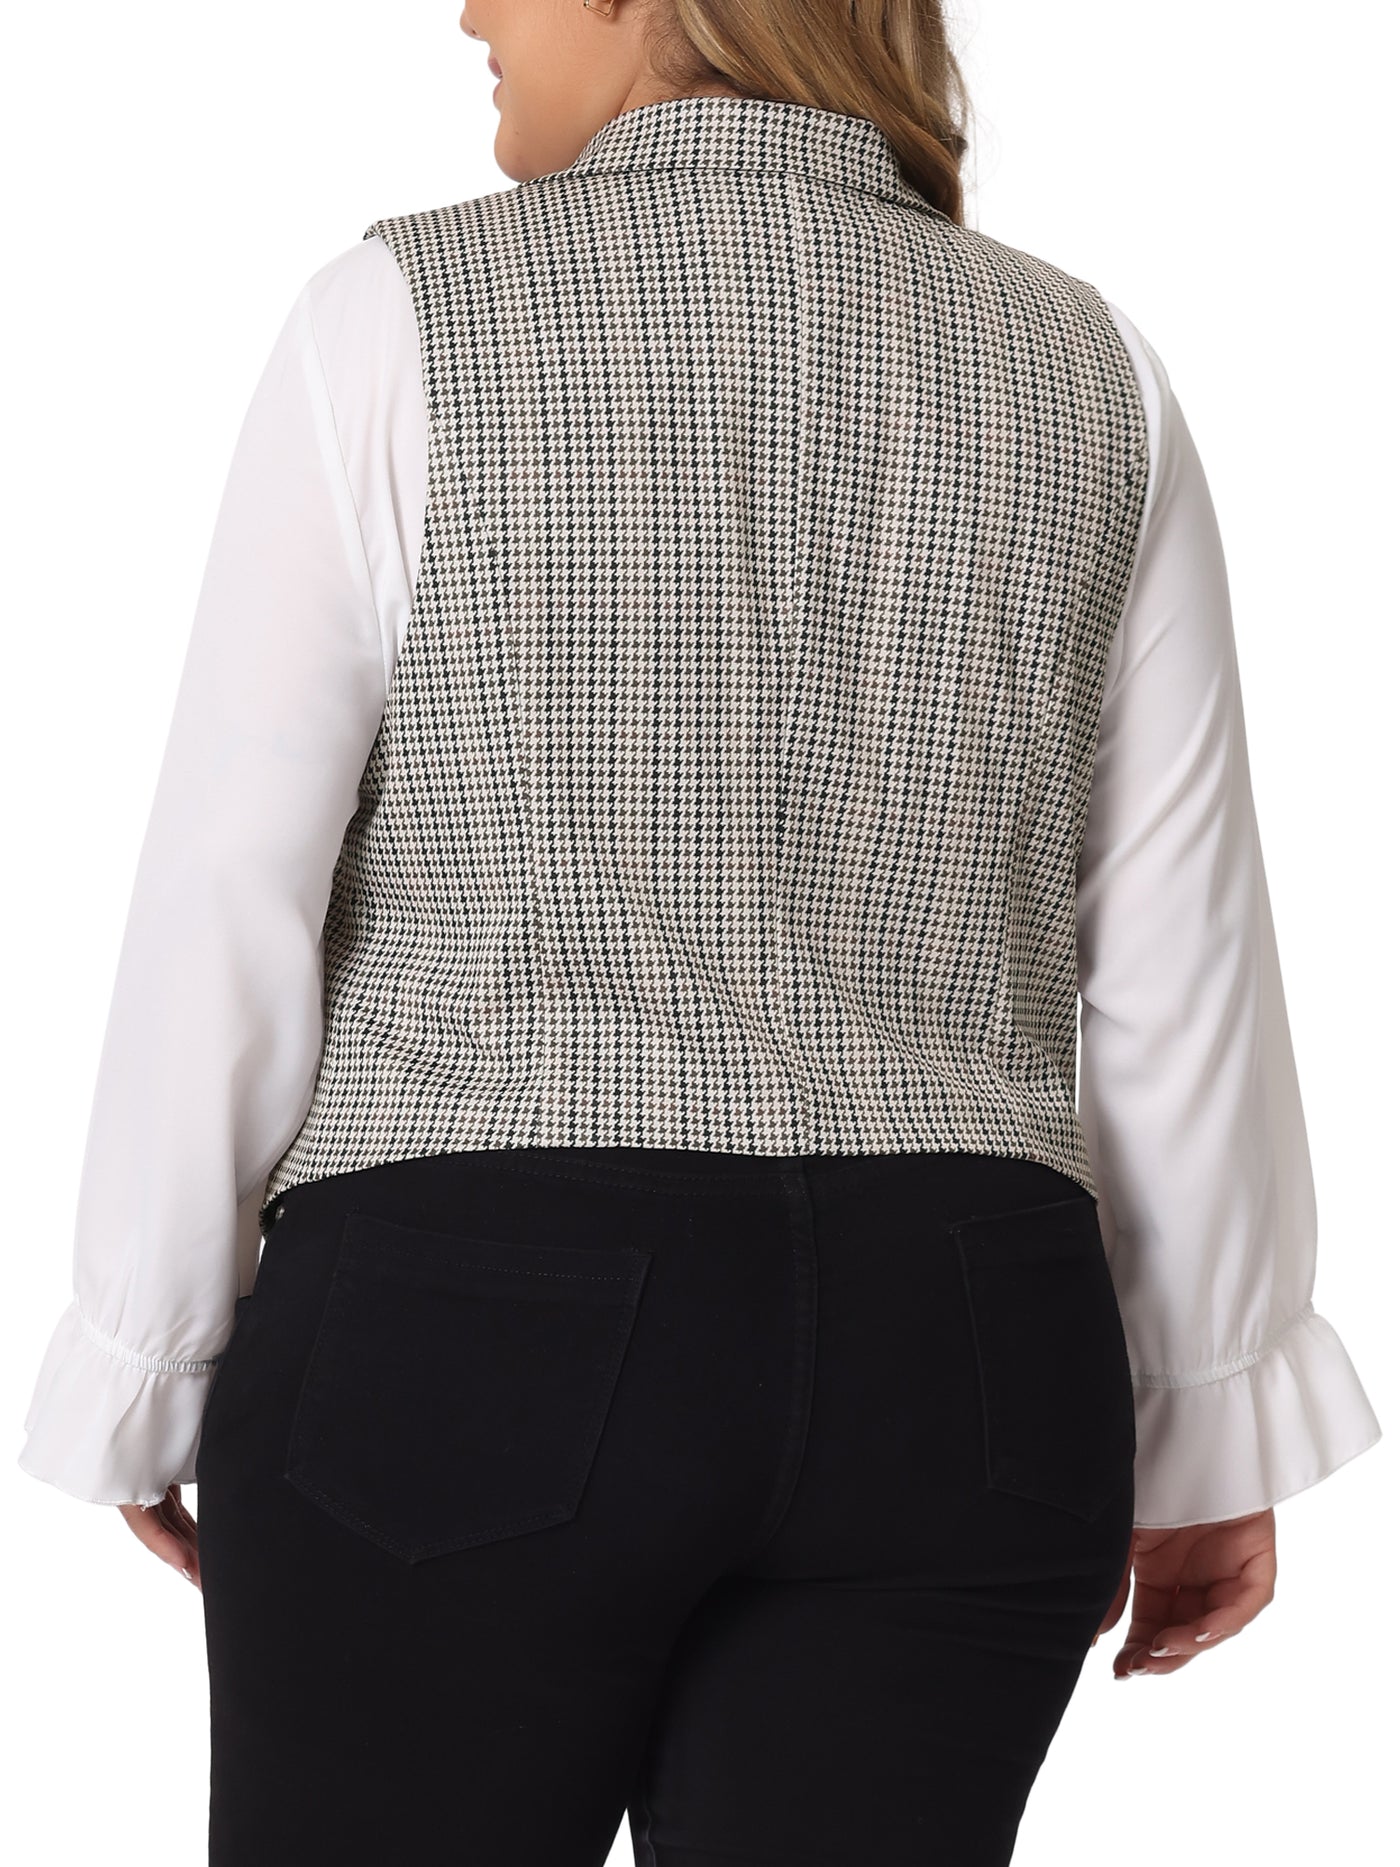 Bublédon Plus Size Waistcoat Vintage Button Steampunk Dress Jacquard Jacket Vest